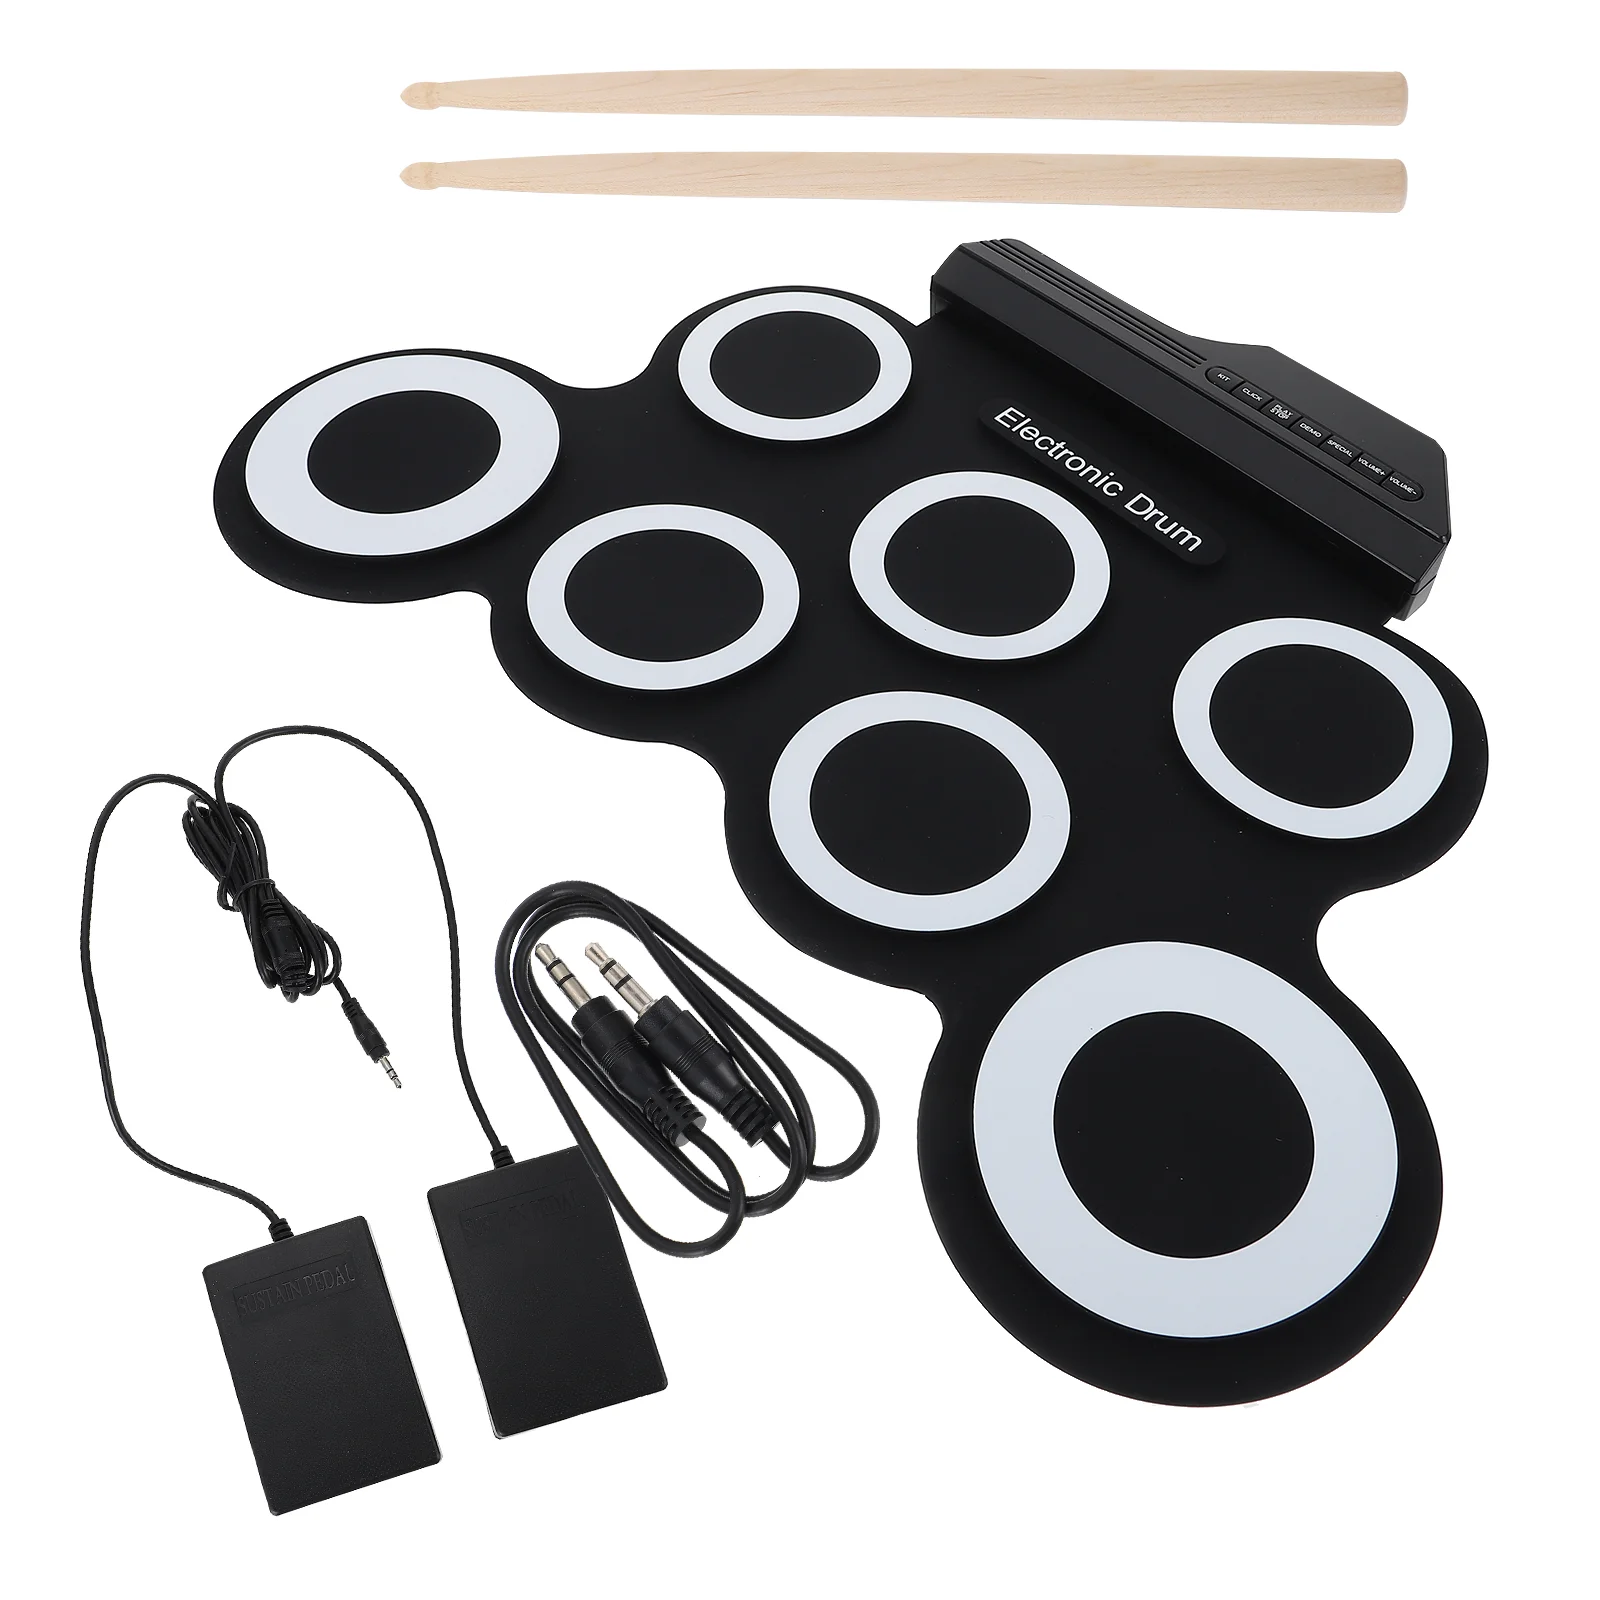 1 Комплект Электрического Барабана для Зарядки через USB, Ручная Свернутая Ударная Установка, Портативная Ударная Установка, Тренировочный Барабан, Черный